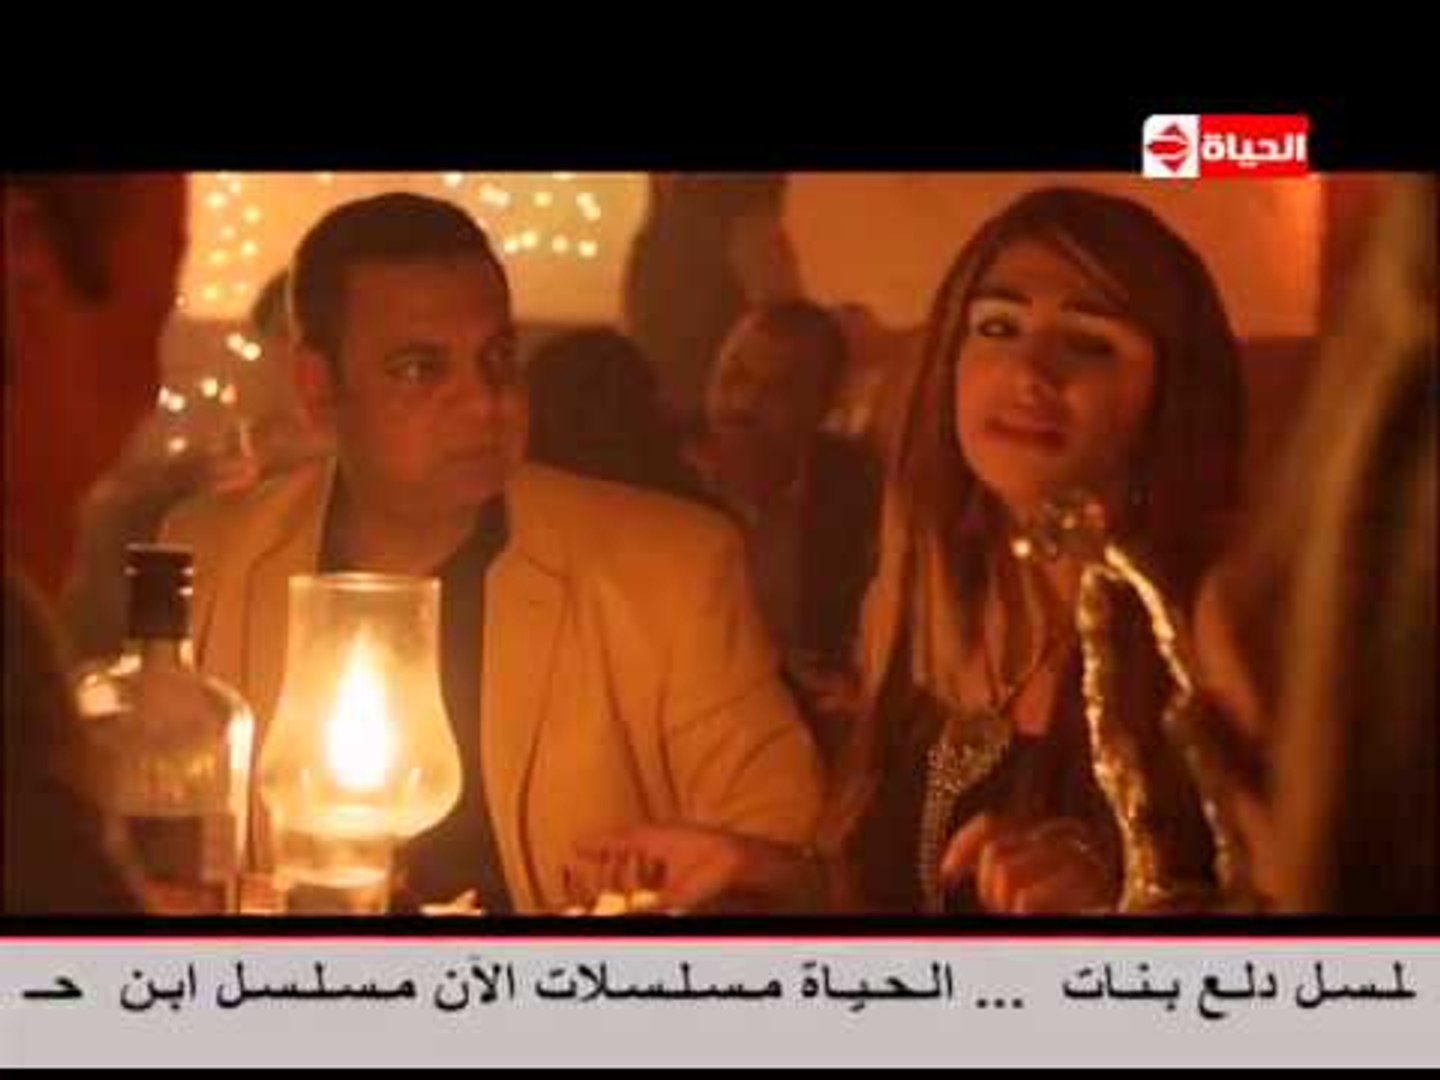 مسلسل سجن النسا - الحلقة ( 3 ) الثالثة - بطولة نيللى كريم - Sagn Al Nasa  Series Episode 03 - video Dailymotion